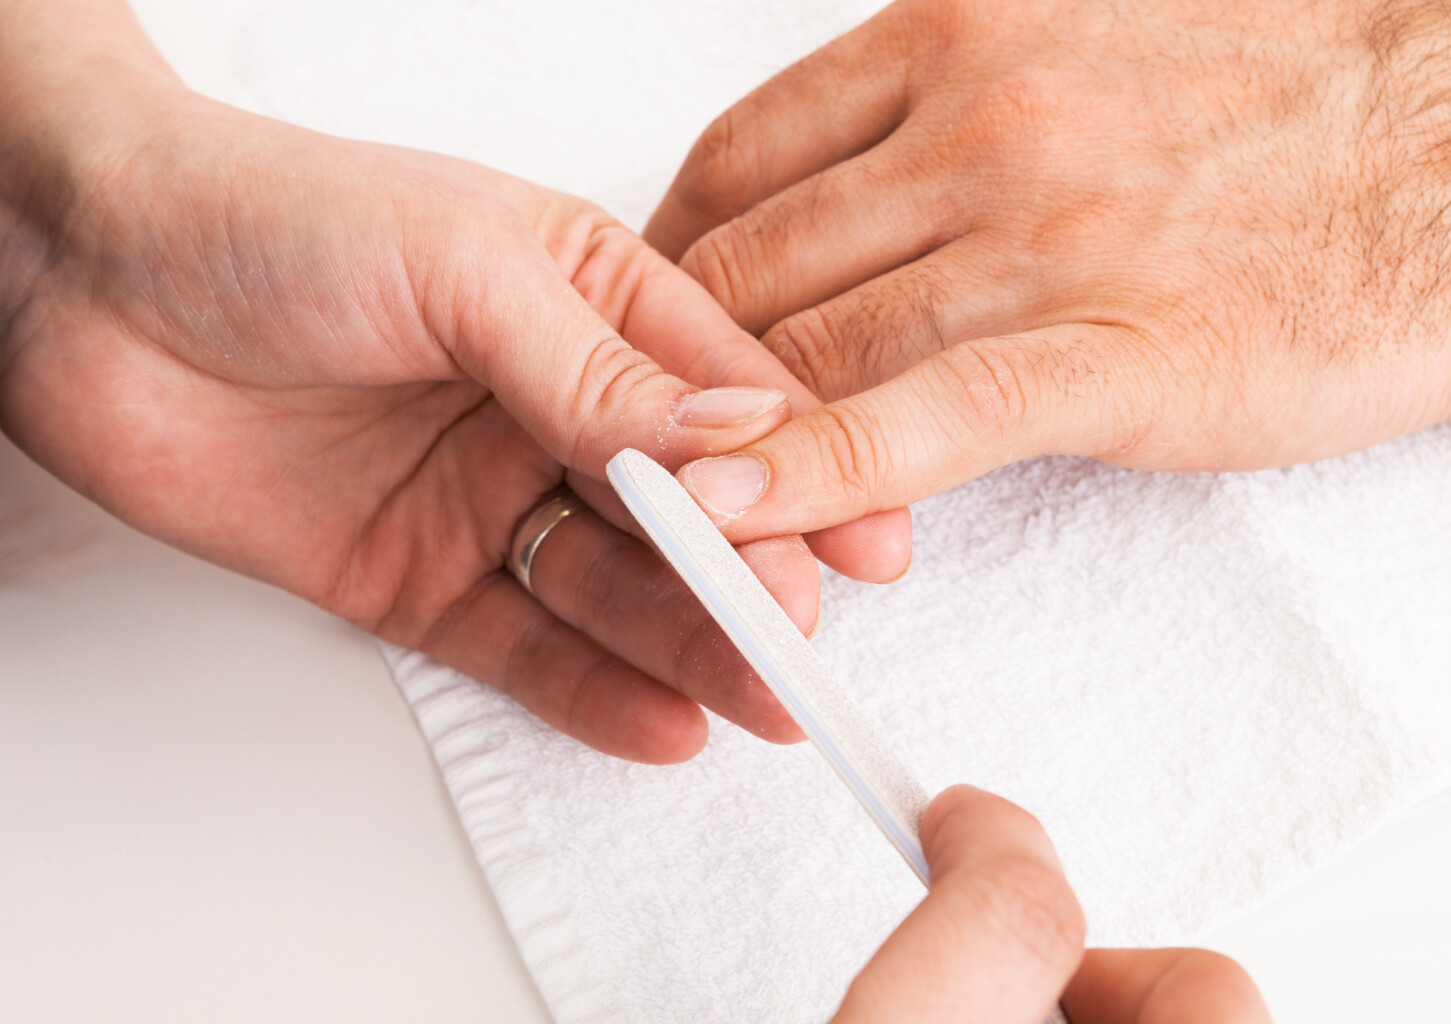 Manicure Biznesowy dla Mężczyzn | Sosnowiec